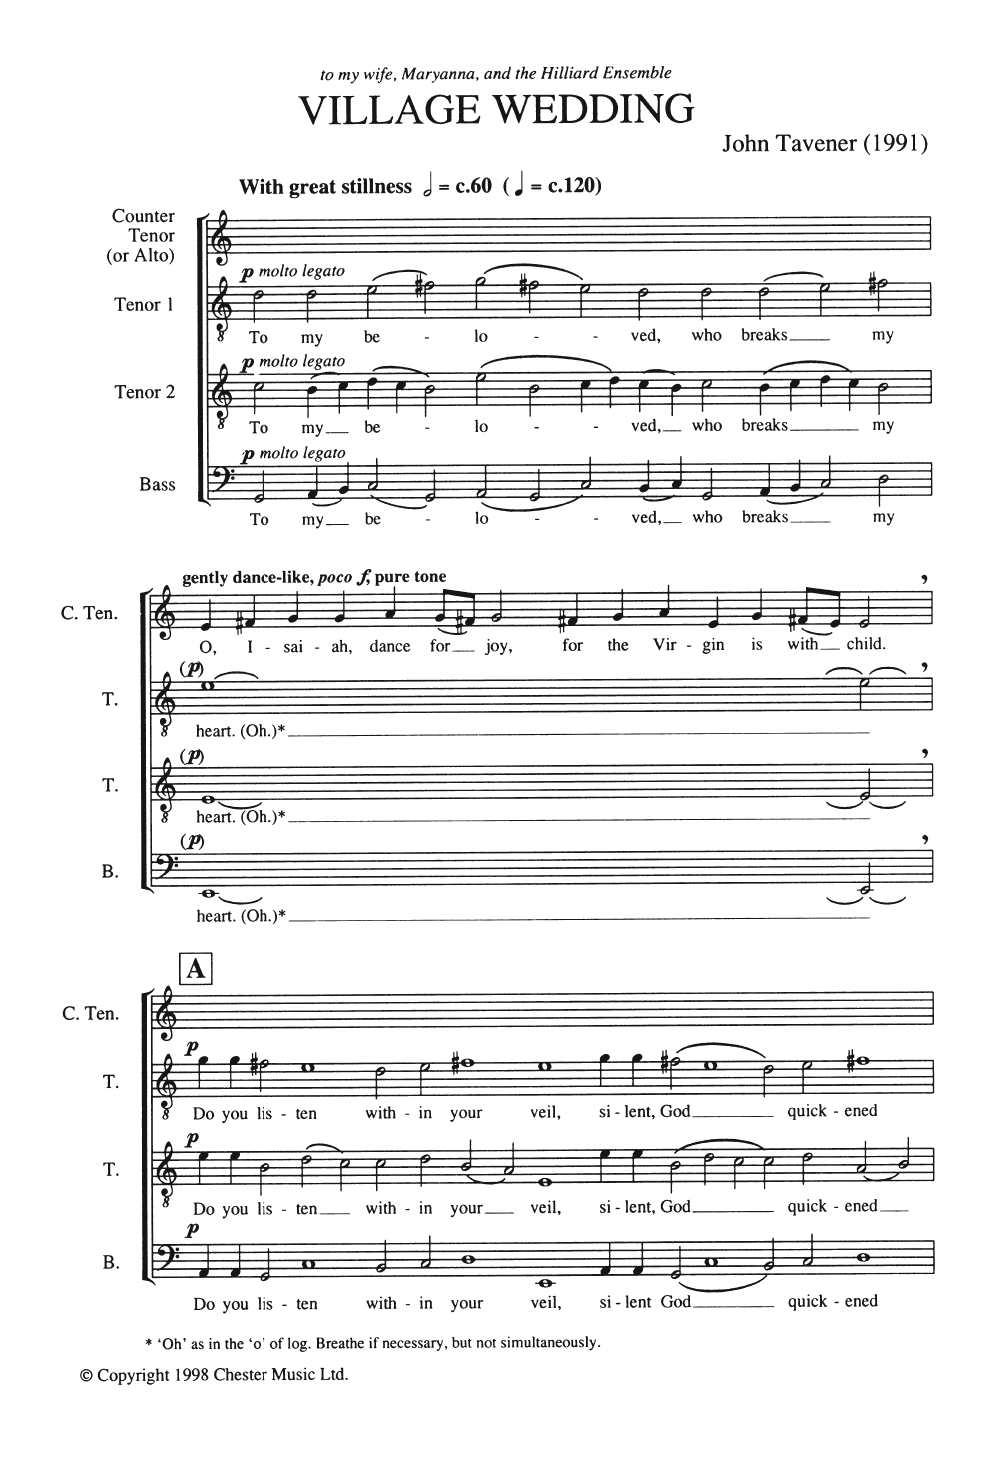 John Tavener Village Wedding Sheet Music Notes & Chords for ATTB - Download or Print PDF